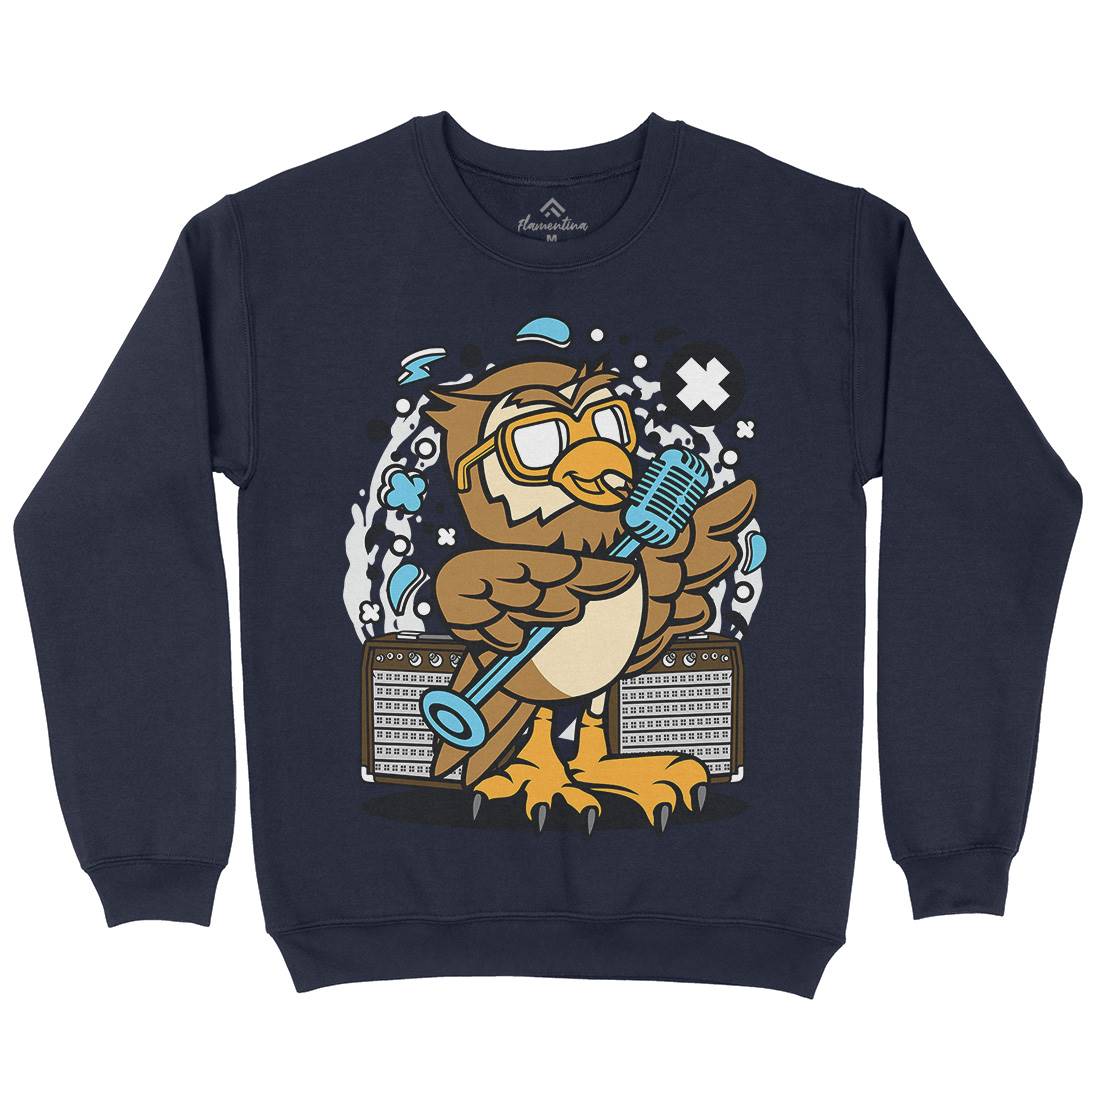 Owl Singer Kids Crew Neck Sweatshirt Music C600